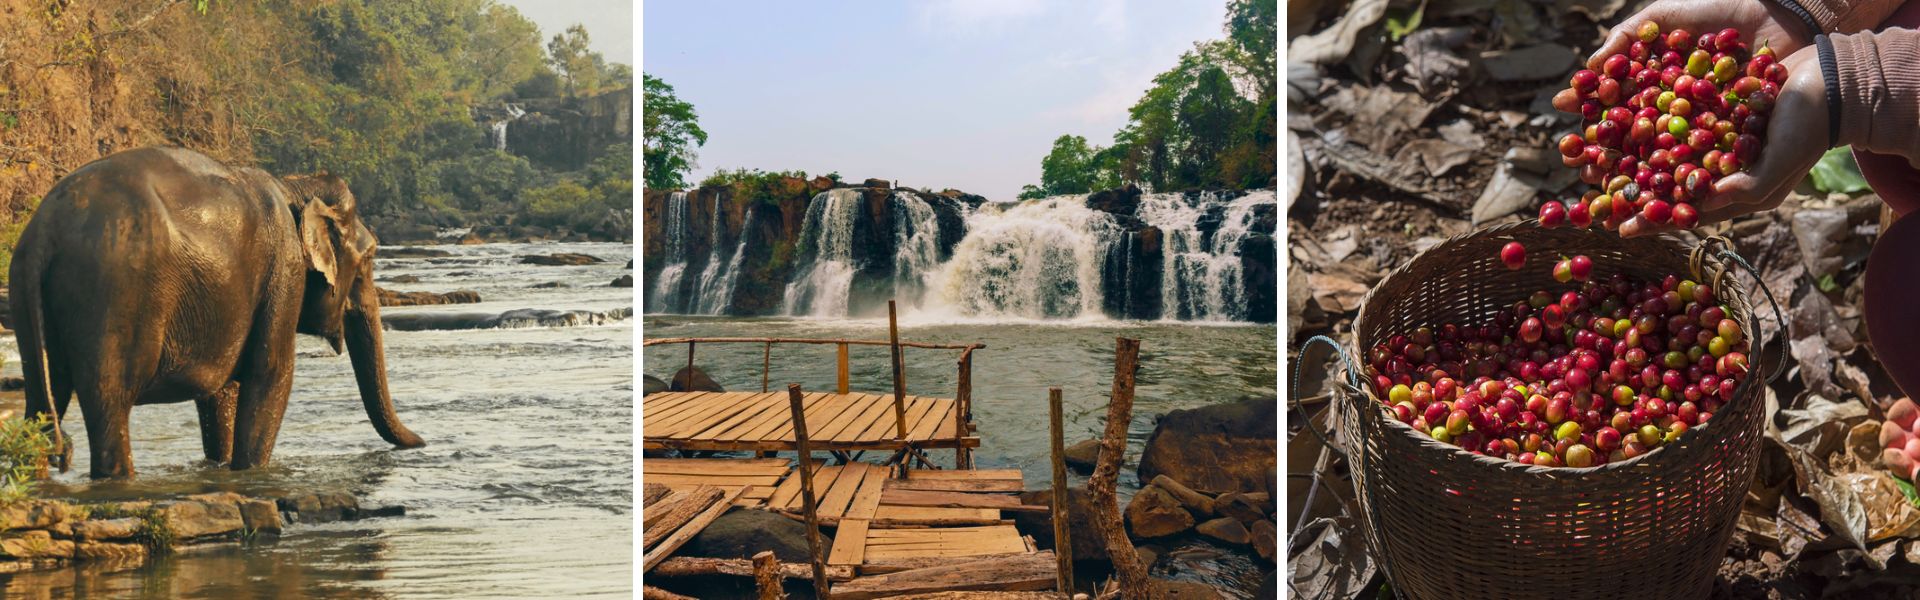 Bolaven Plateau: Sehenswürdigkeiten und Aktivitäten | Laos Reisen